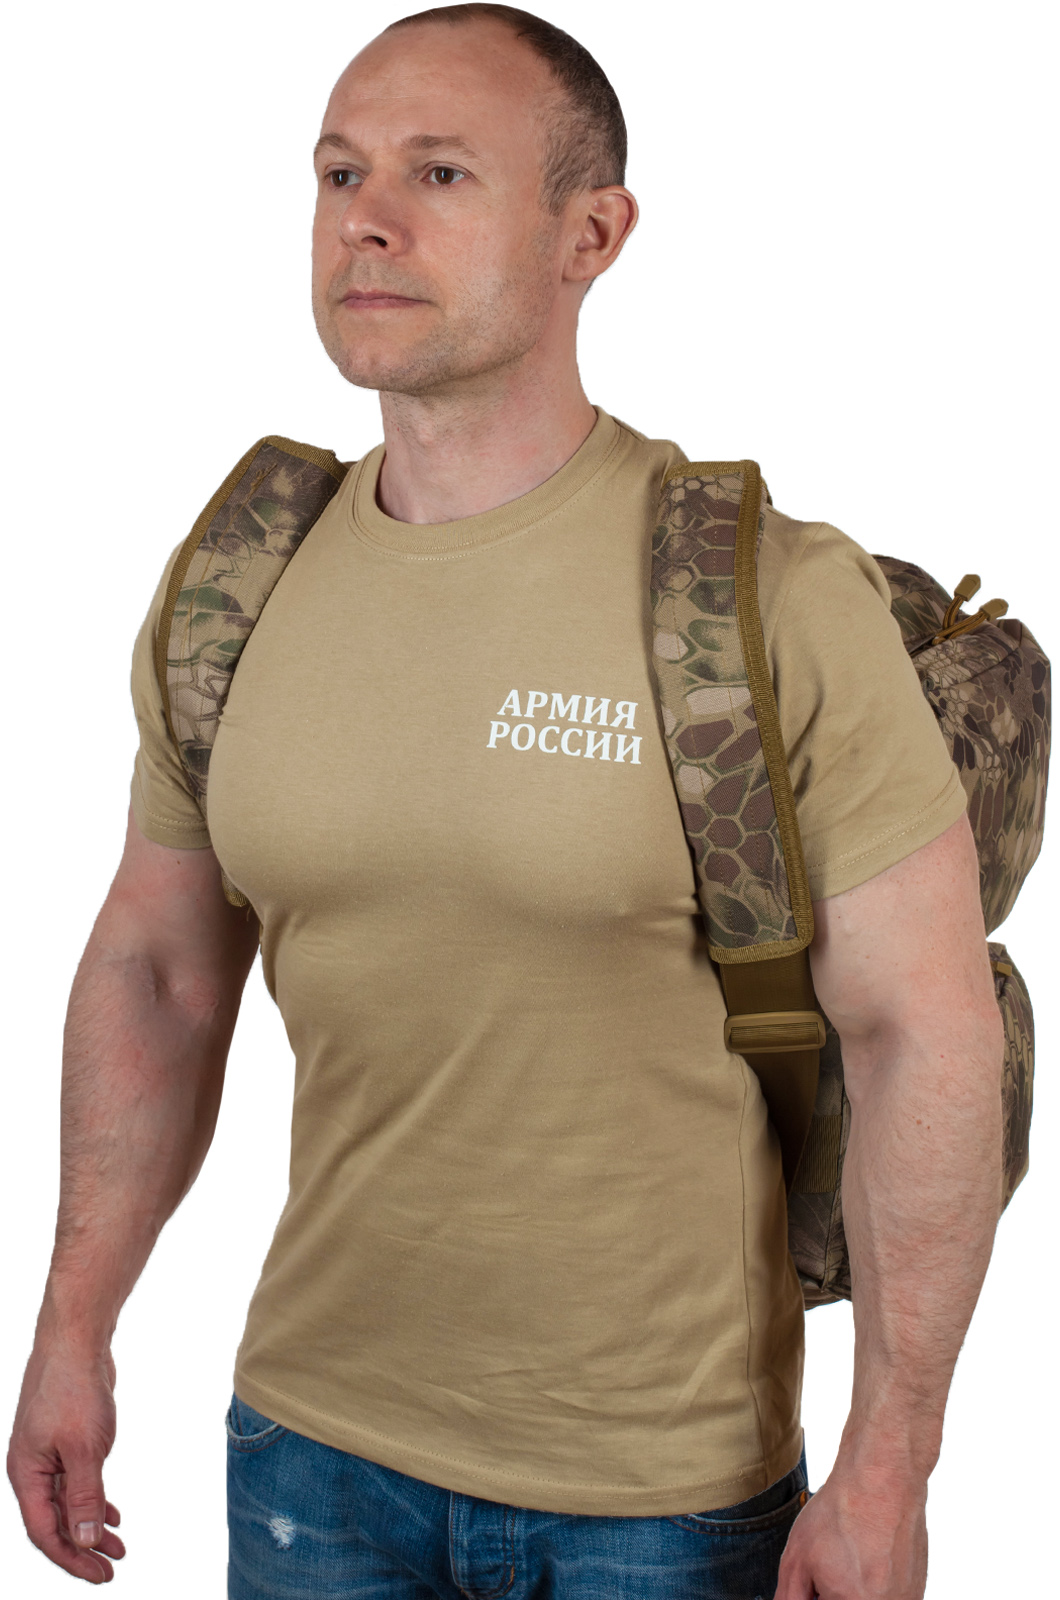 Армейская тактическая сумка Спецназа ГРУ 